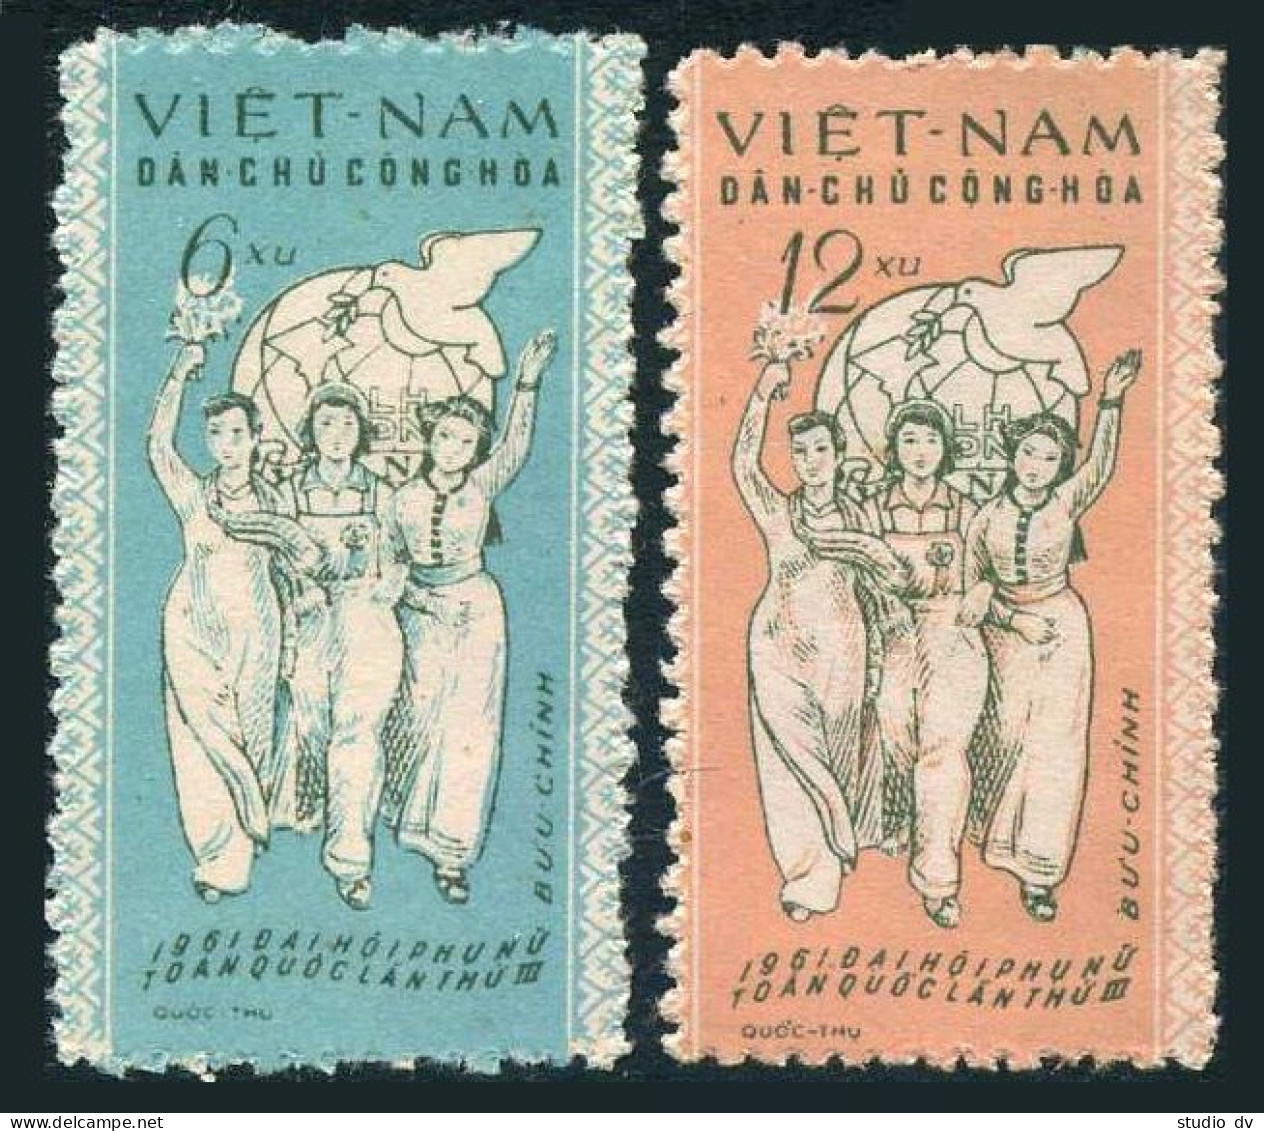 Viet Nam 146-147,MNH.Michel 152-153. Vietnamese Women Union,3rd Congress.1961. - Viêt-Nam